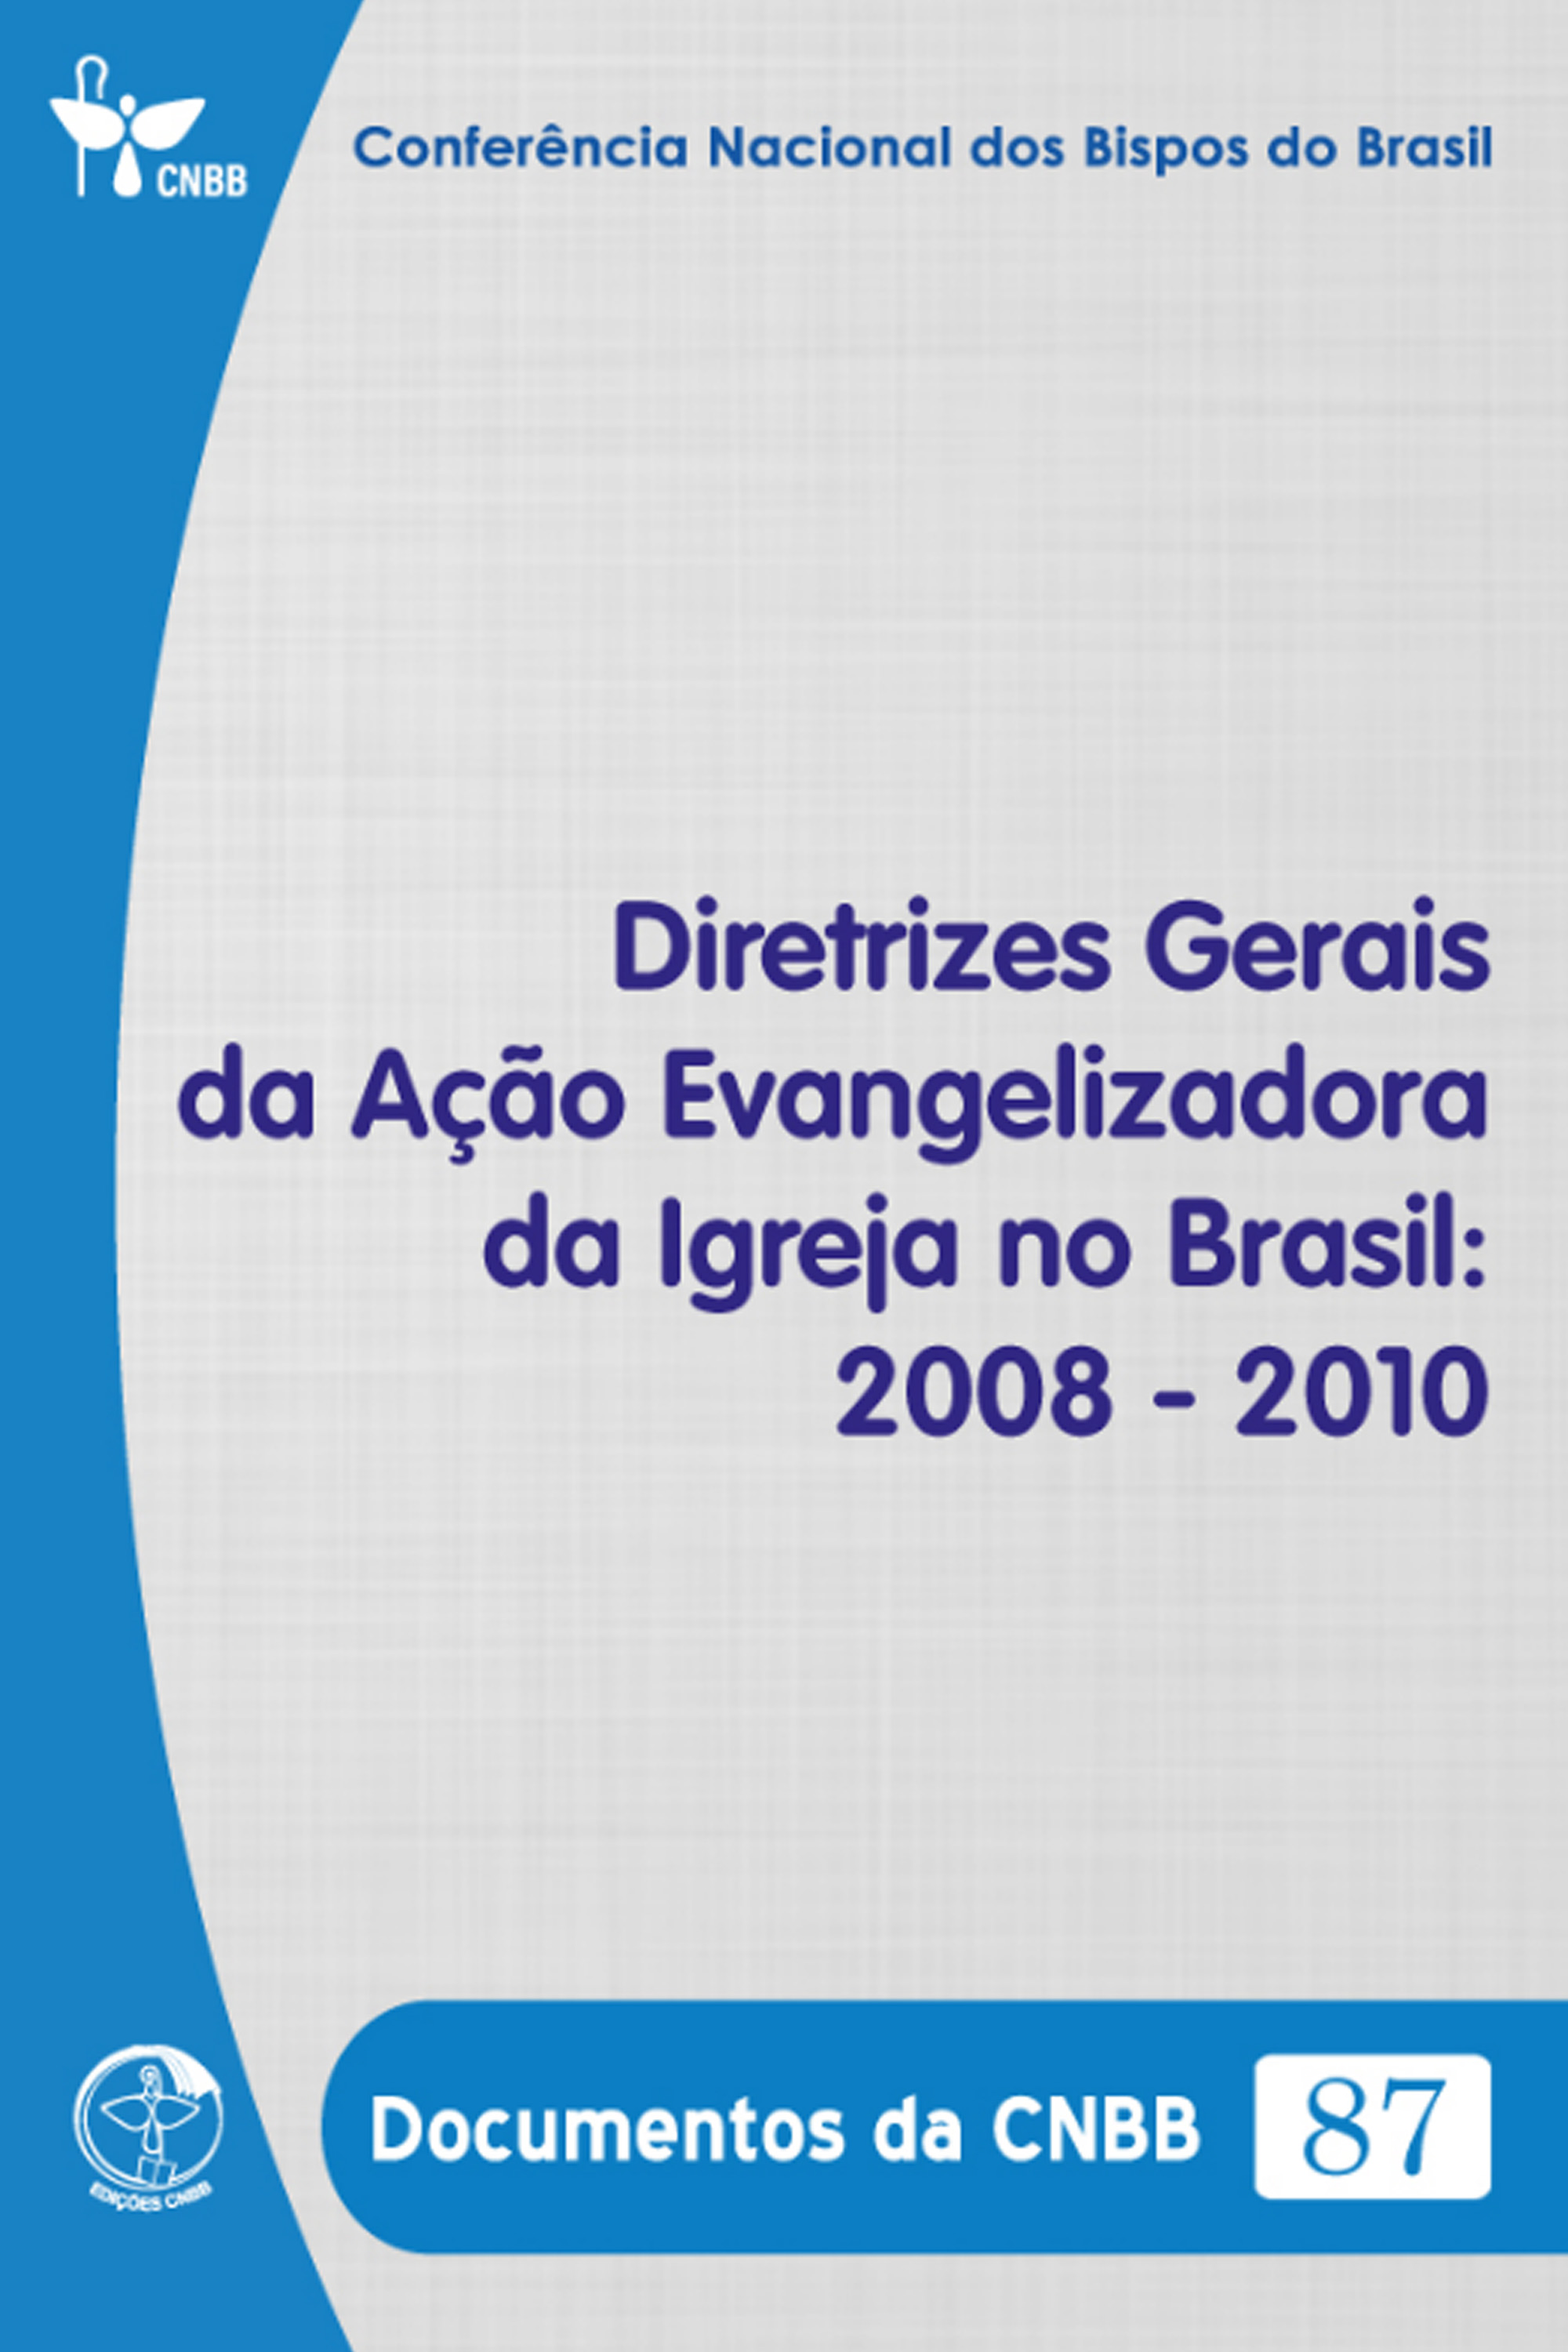 Diretrizes Gerais da Ação Evangelizadora da Igreja no Brasil 2008-2010 - Documentos da CNBB 87 - Digital